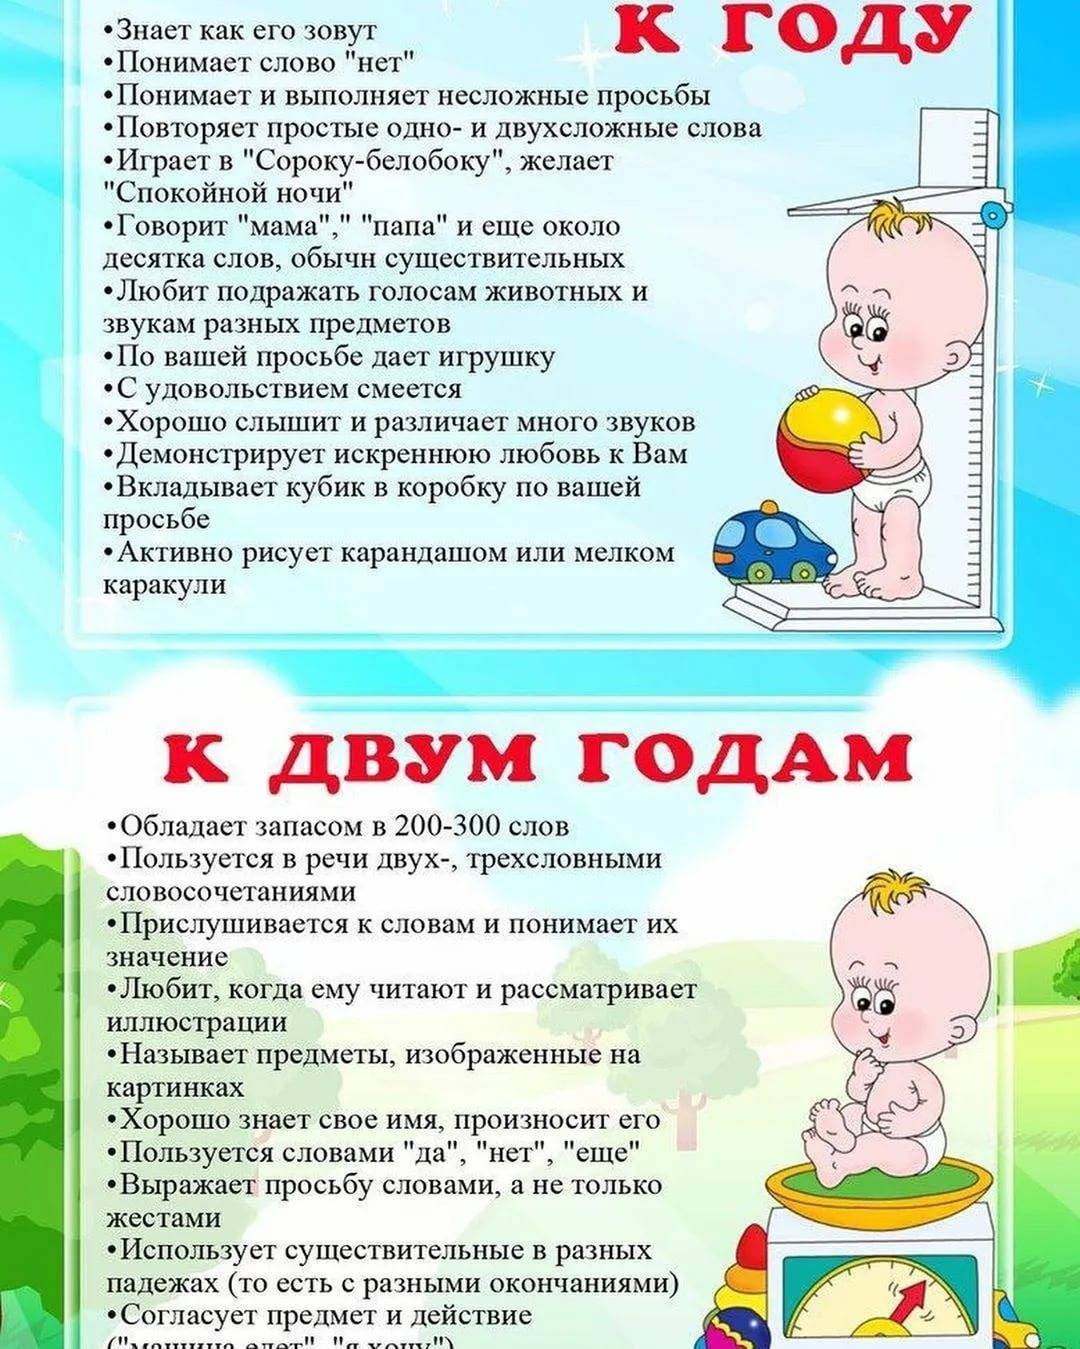 Развитие ребенка в год и три - детская городская поликлиника №1 г. магнитогорска